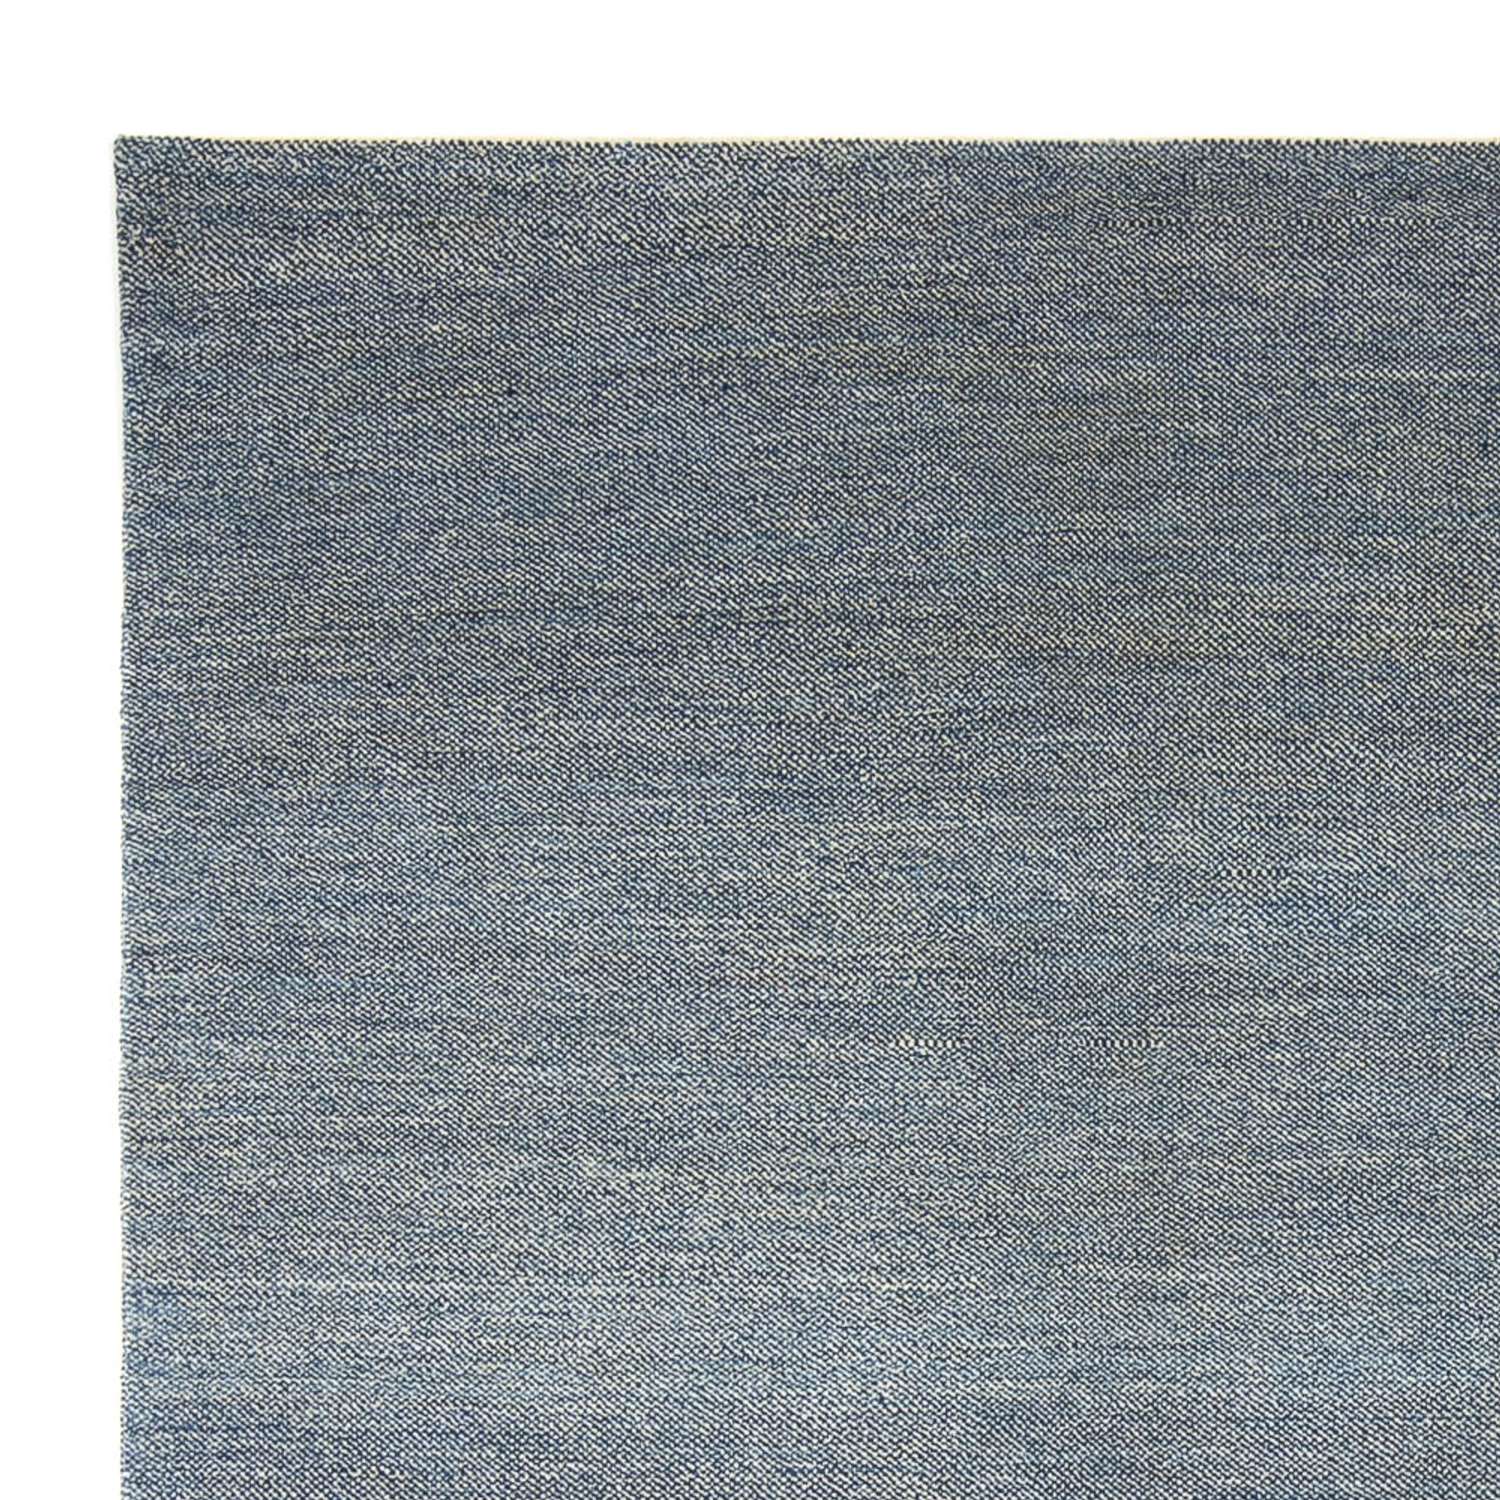 Gabbeh-matta - persisk - 298 x 246 cm - mörkblå